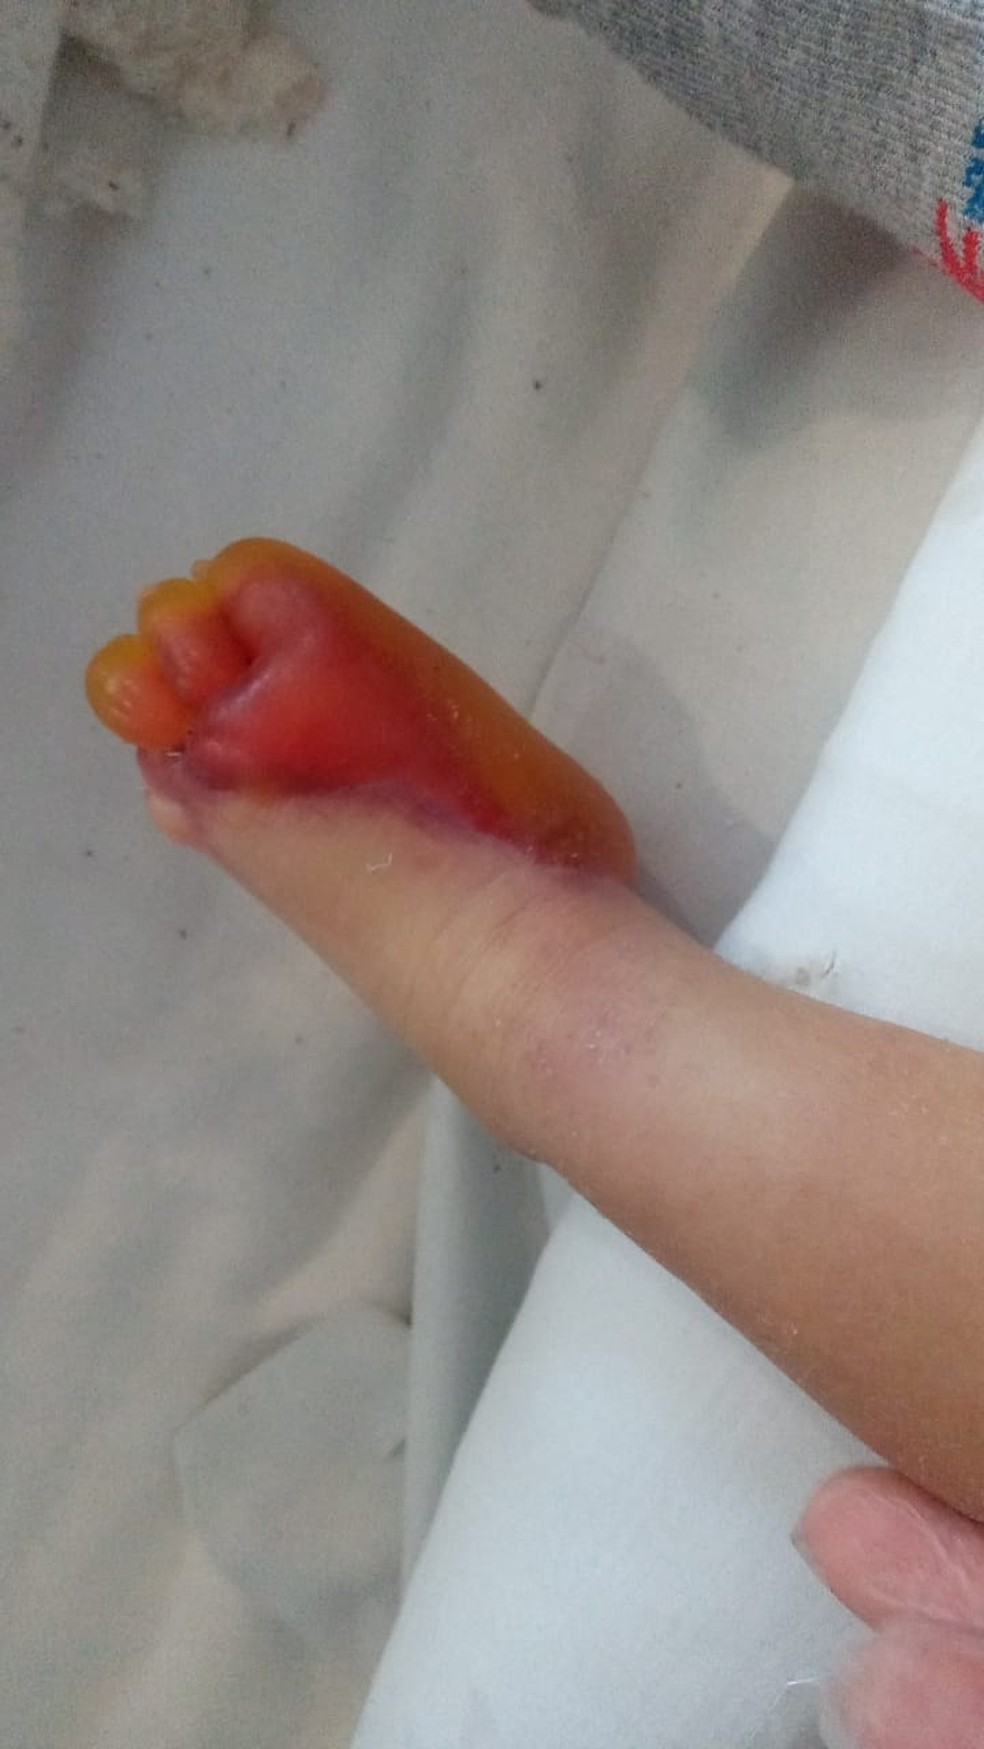 Bebê sofre queimadura nos pés após hospital esquecer aquecedor ligado em Jacareí; família acusa hospital de negligência. — Foto: Arquivo pessoal